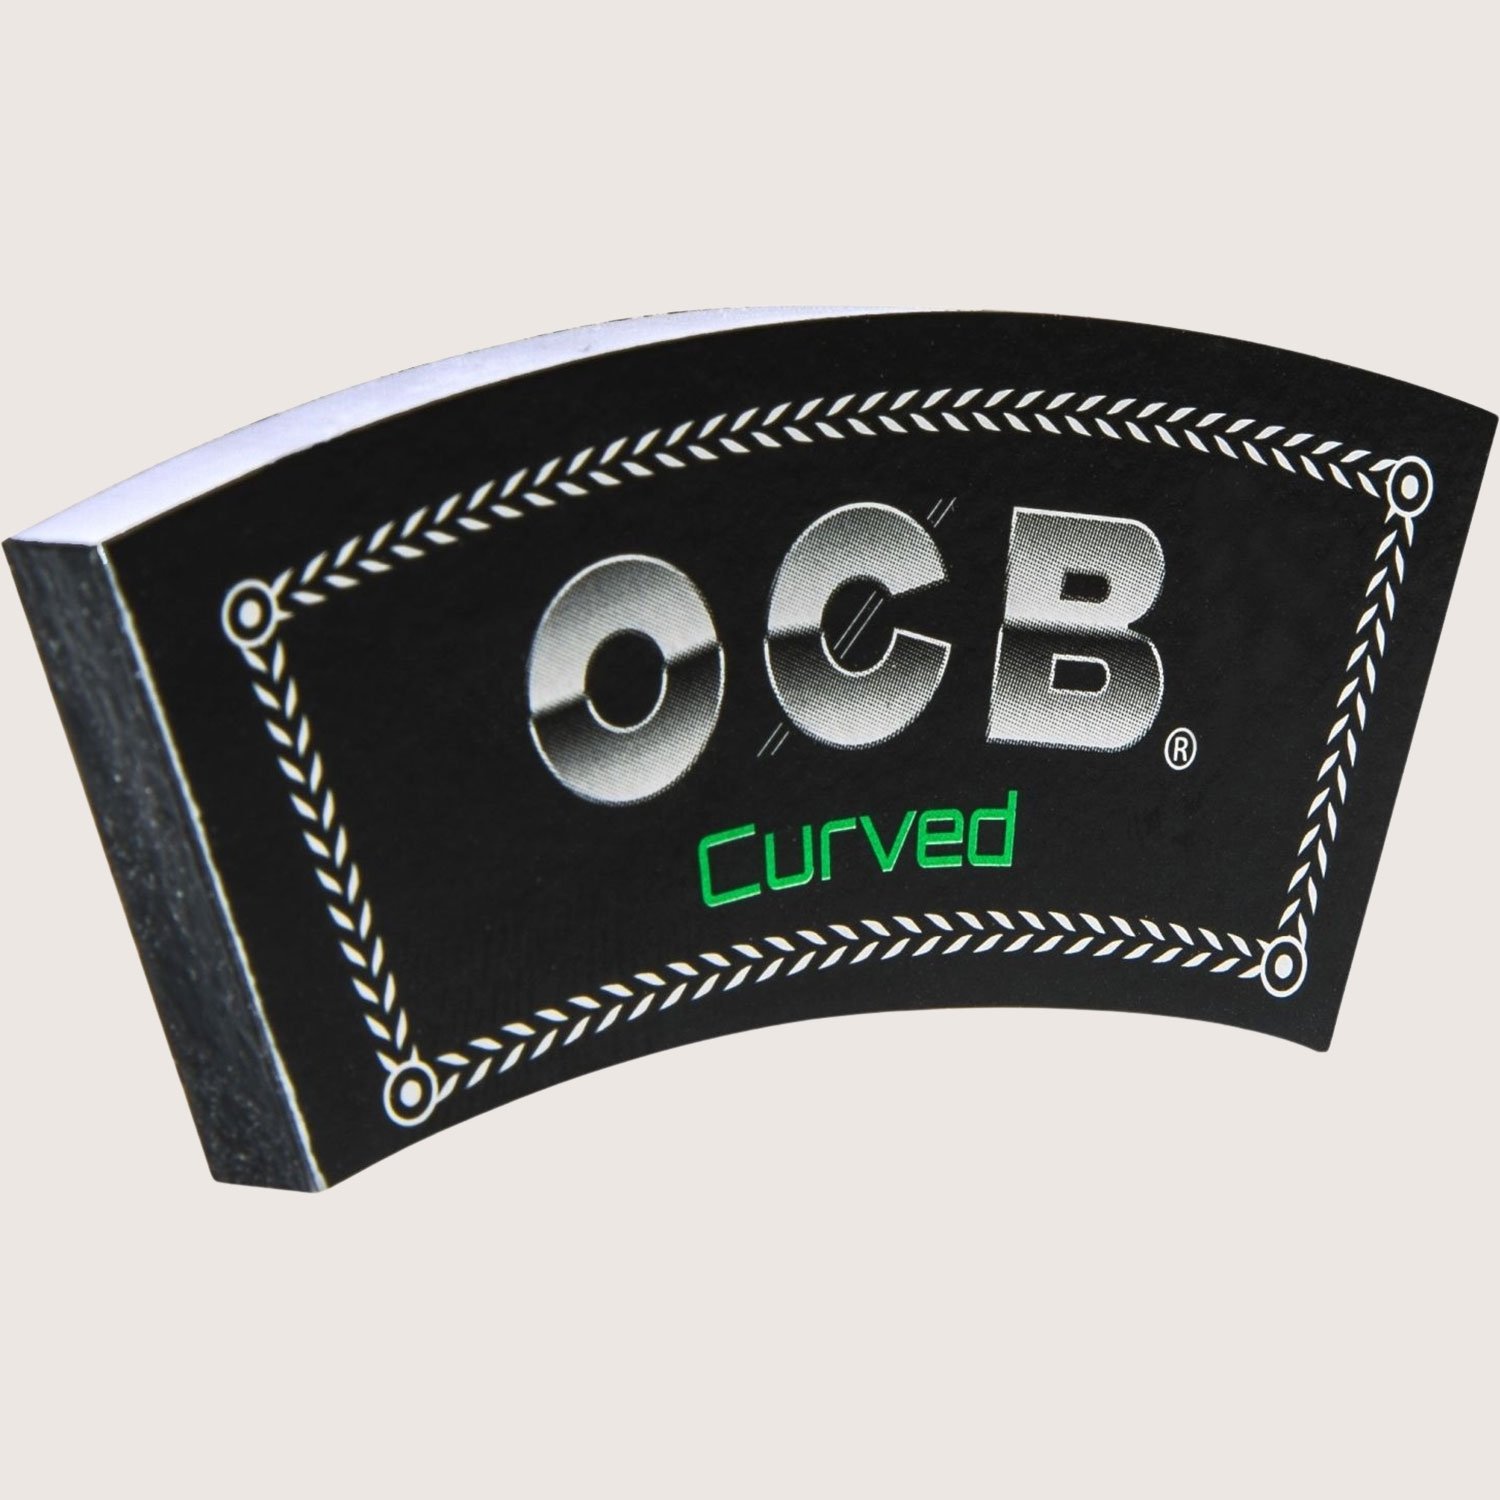 OCB Curved Filter-Tips 32 Filter